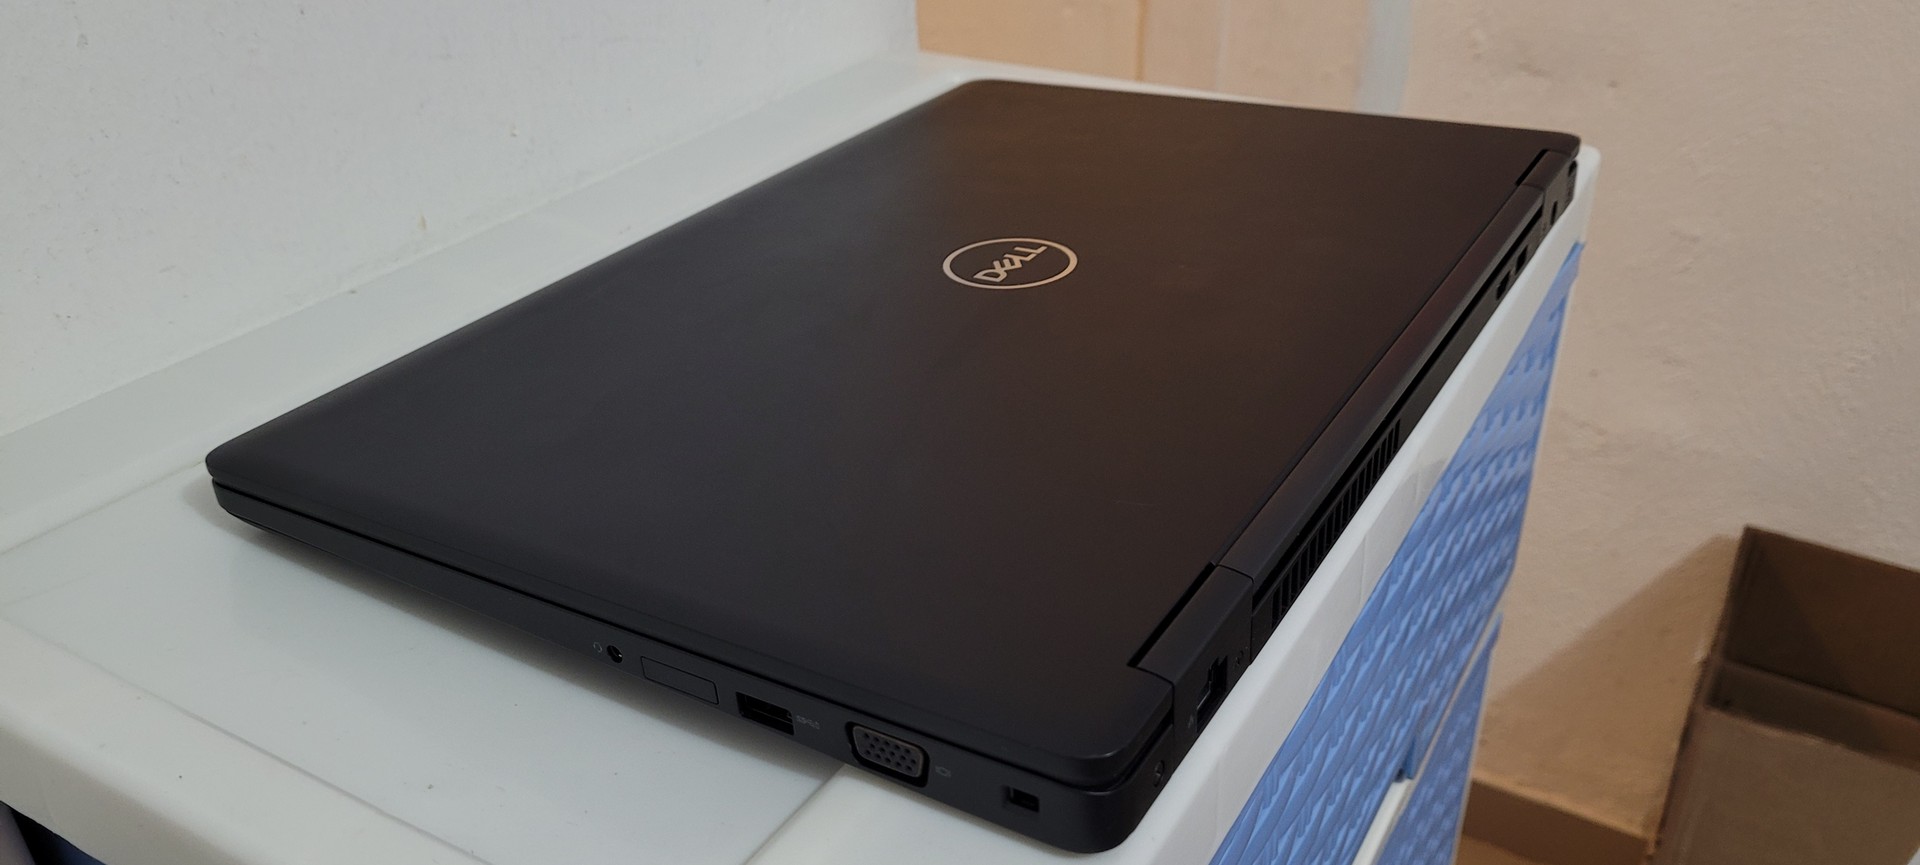 computadoras y laptops - Dell 5580 17 Pulg Core i5 7ma Gen Ram 16gb ddr4 Disco 256gb SSD Video 8gb 2